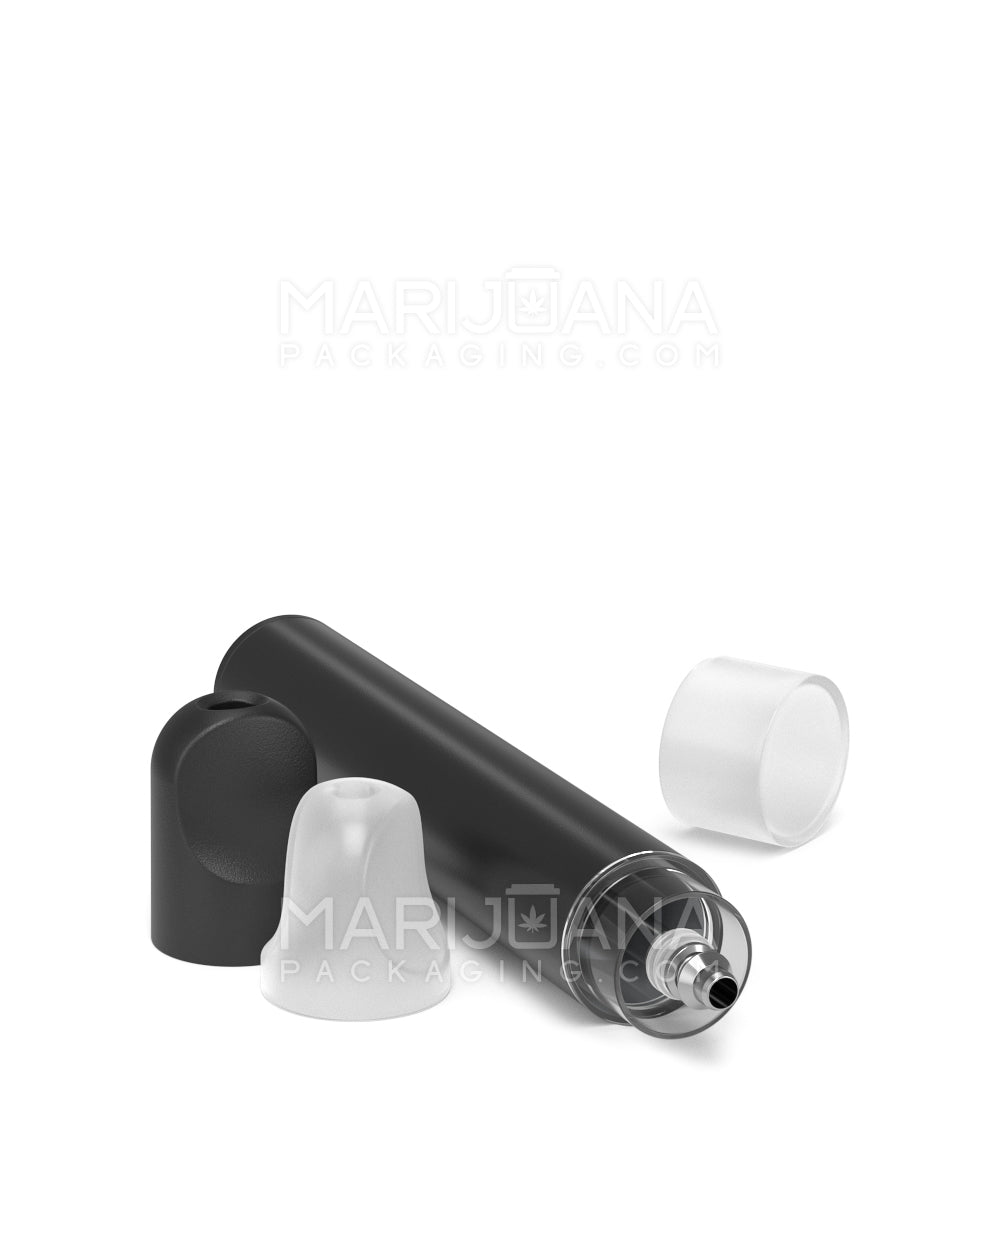 RAE | Gamma Black Ceramic Core Disposable Windowless Vape Pen | 0.5mL - 310 mAh - 100 Count